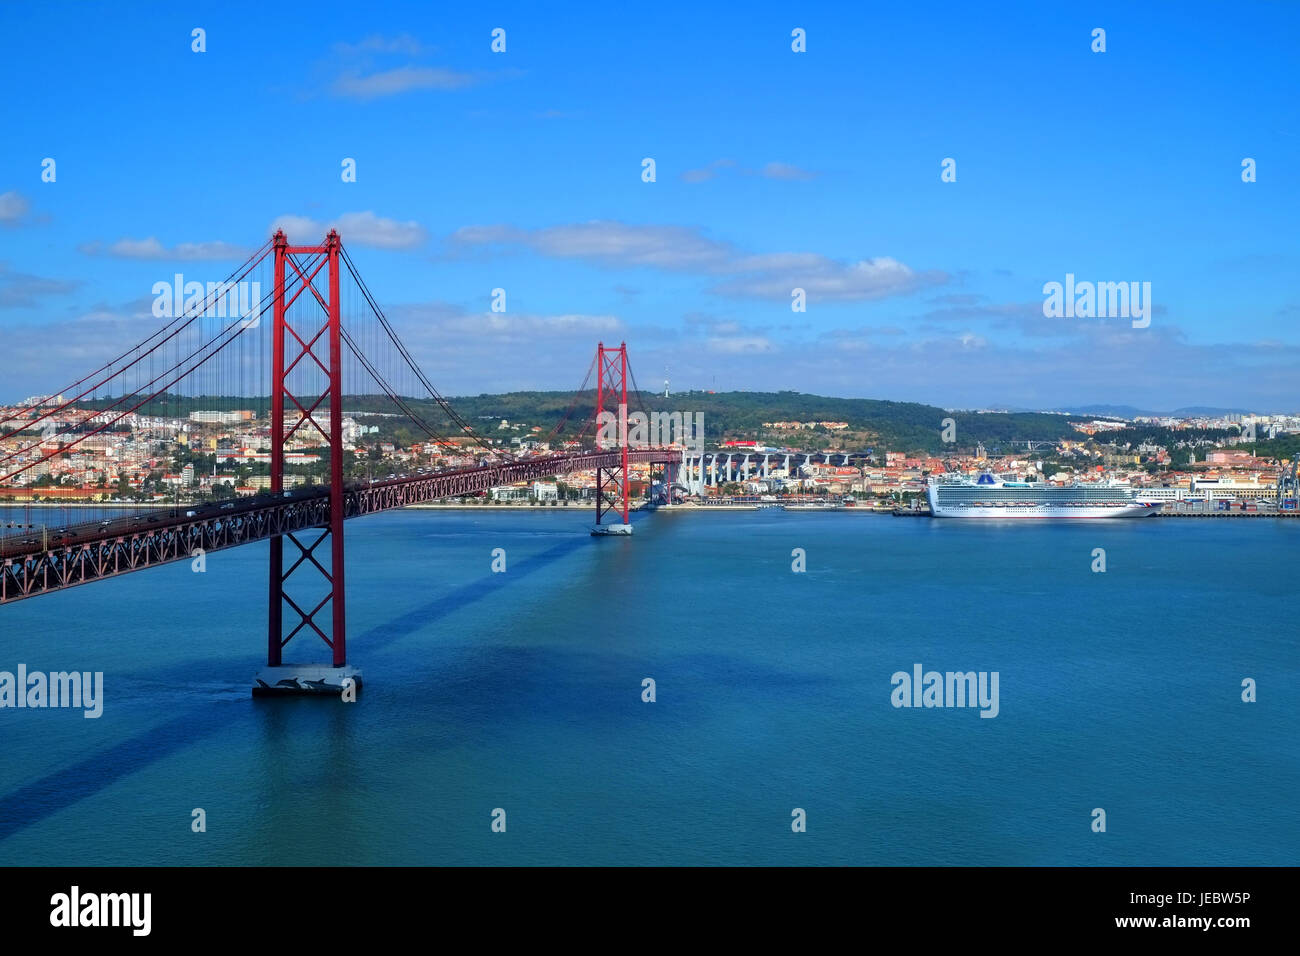 25 avril Pont sur le Tage et Lisbonne Portugal Almada eu Europe Banque D'Images